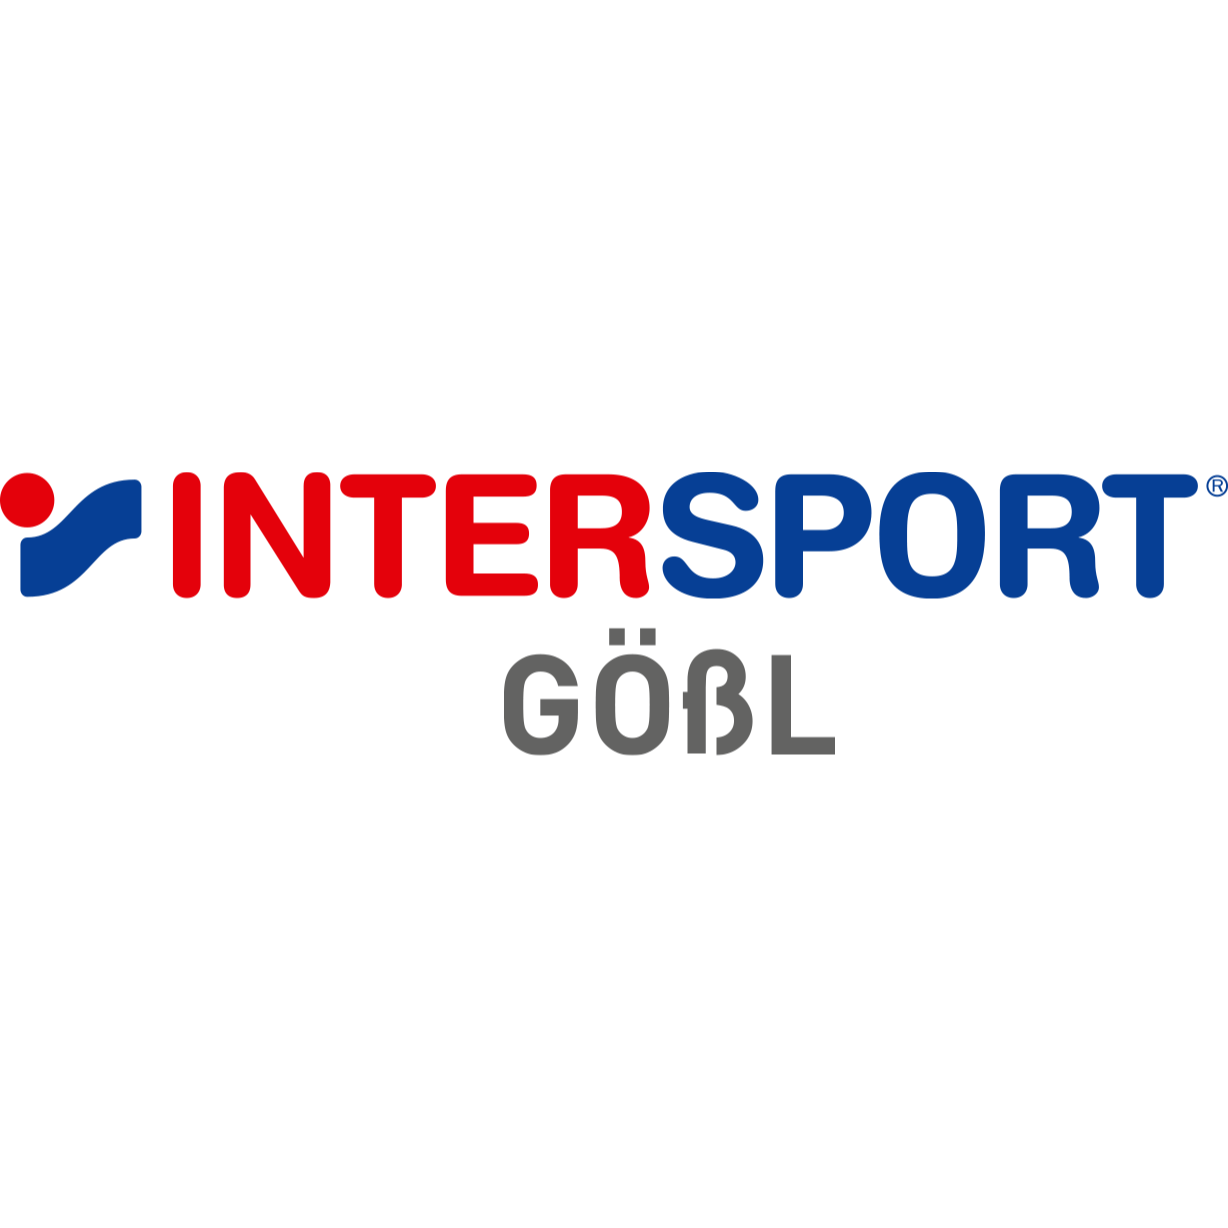 INTERSPORT Gößl Logo